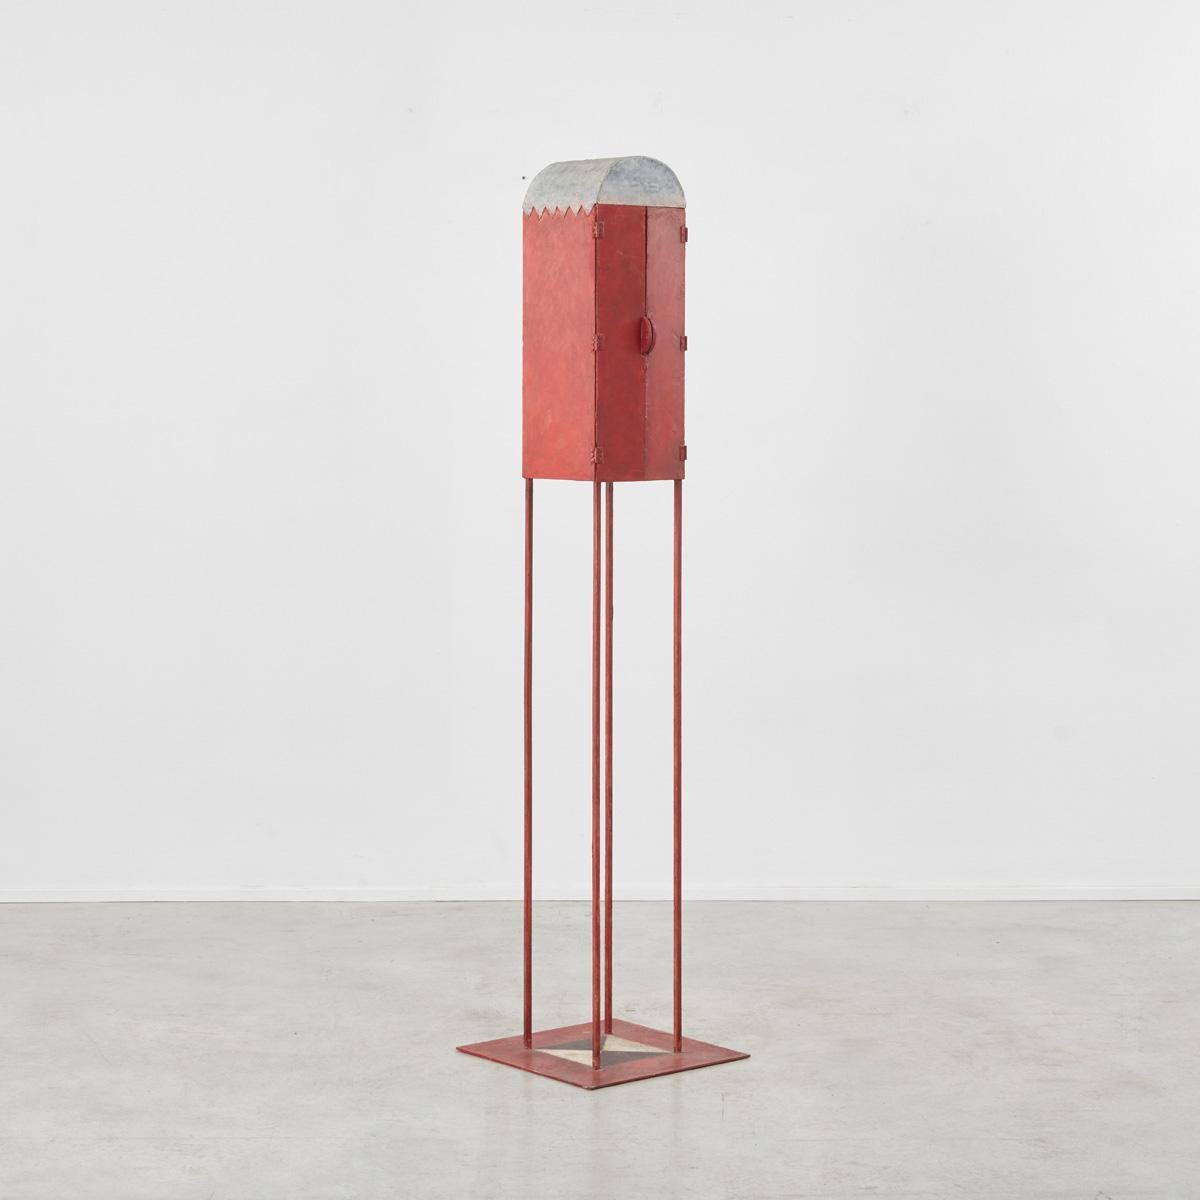 Un grand meuble d'artiste hollandais des années 1980. La finition est d'un rouge éclatant avec des décalcomanies disséminées sur la surface.